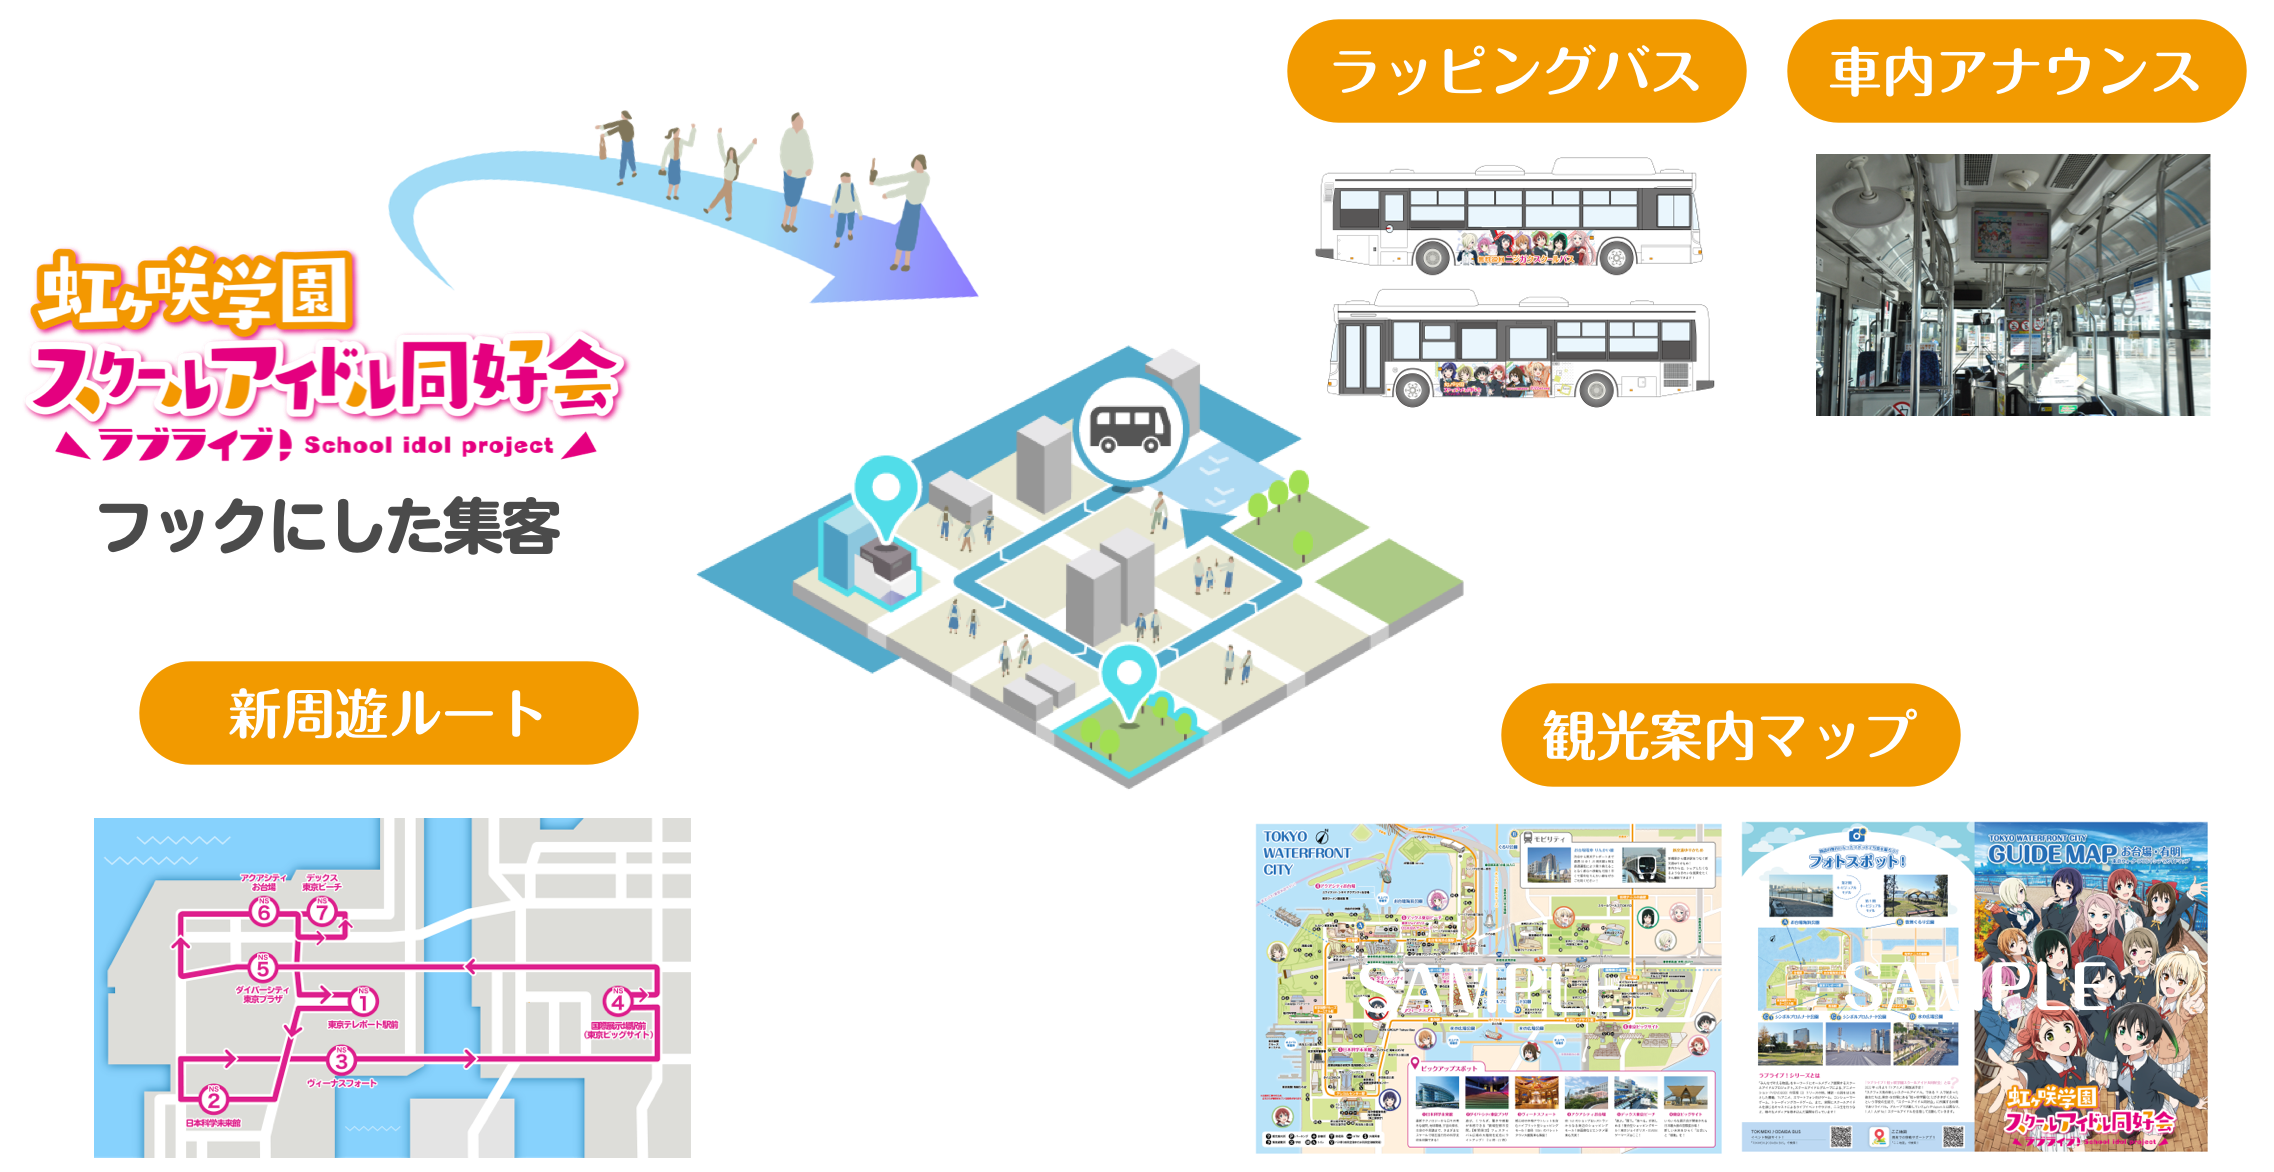 東京臨海副都心エリアへの誘客および周遊促進のためのアニメツーリズム「TOKIMEKI♪ODAIBA BUS～With You～」実証運行を実施のサブ画像2